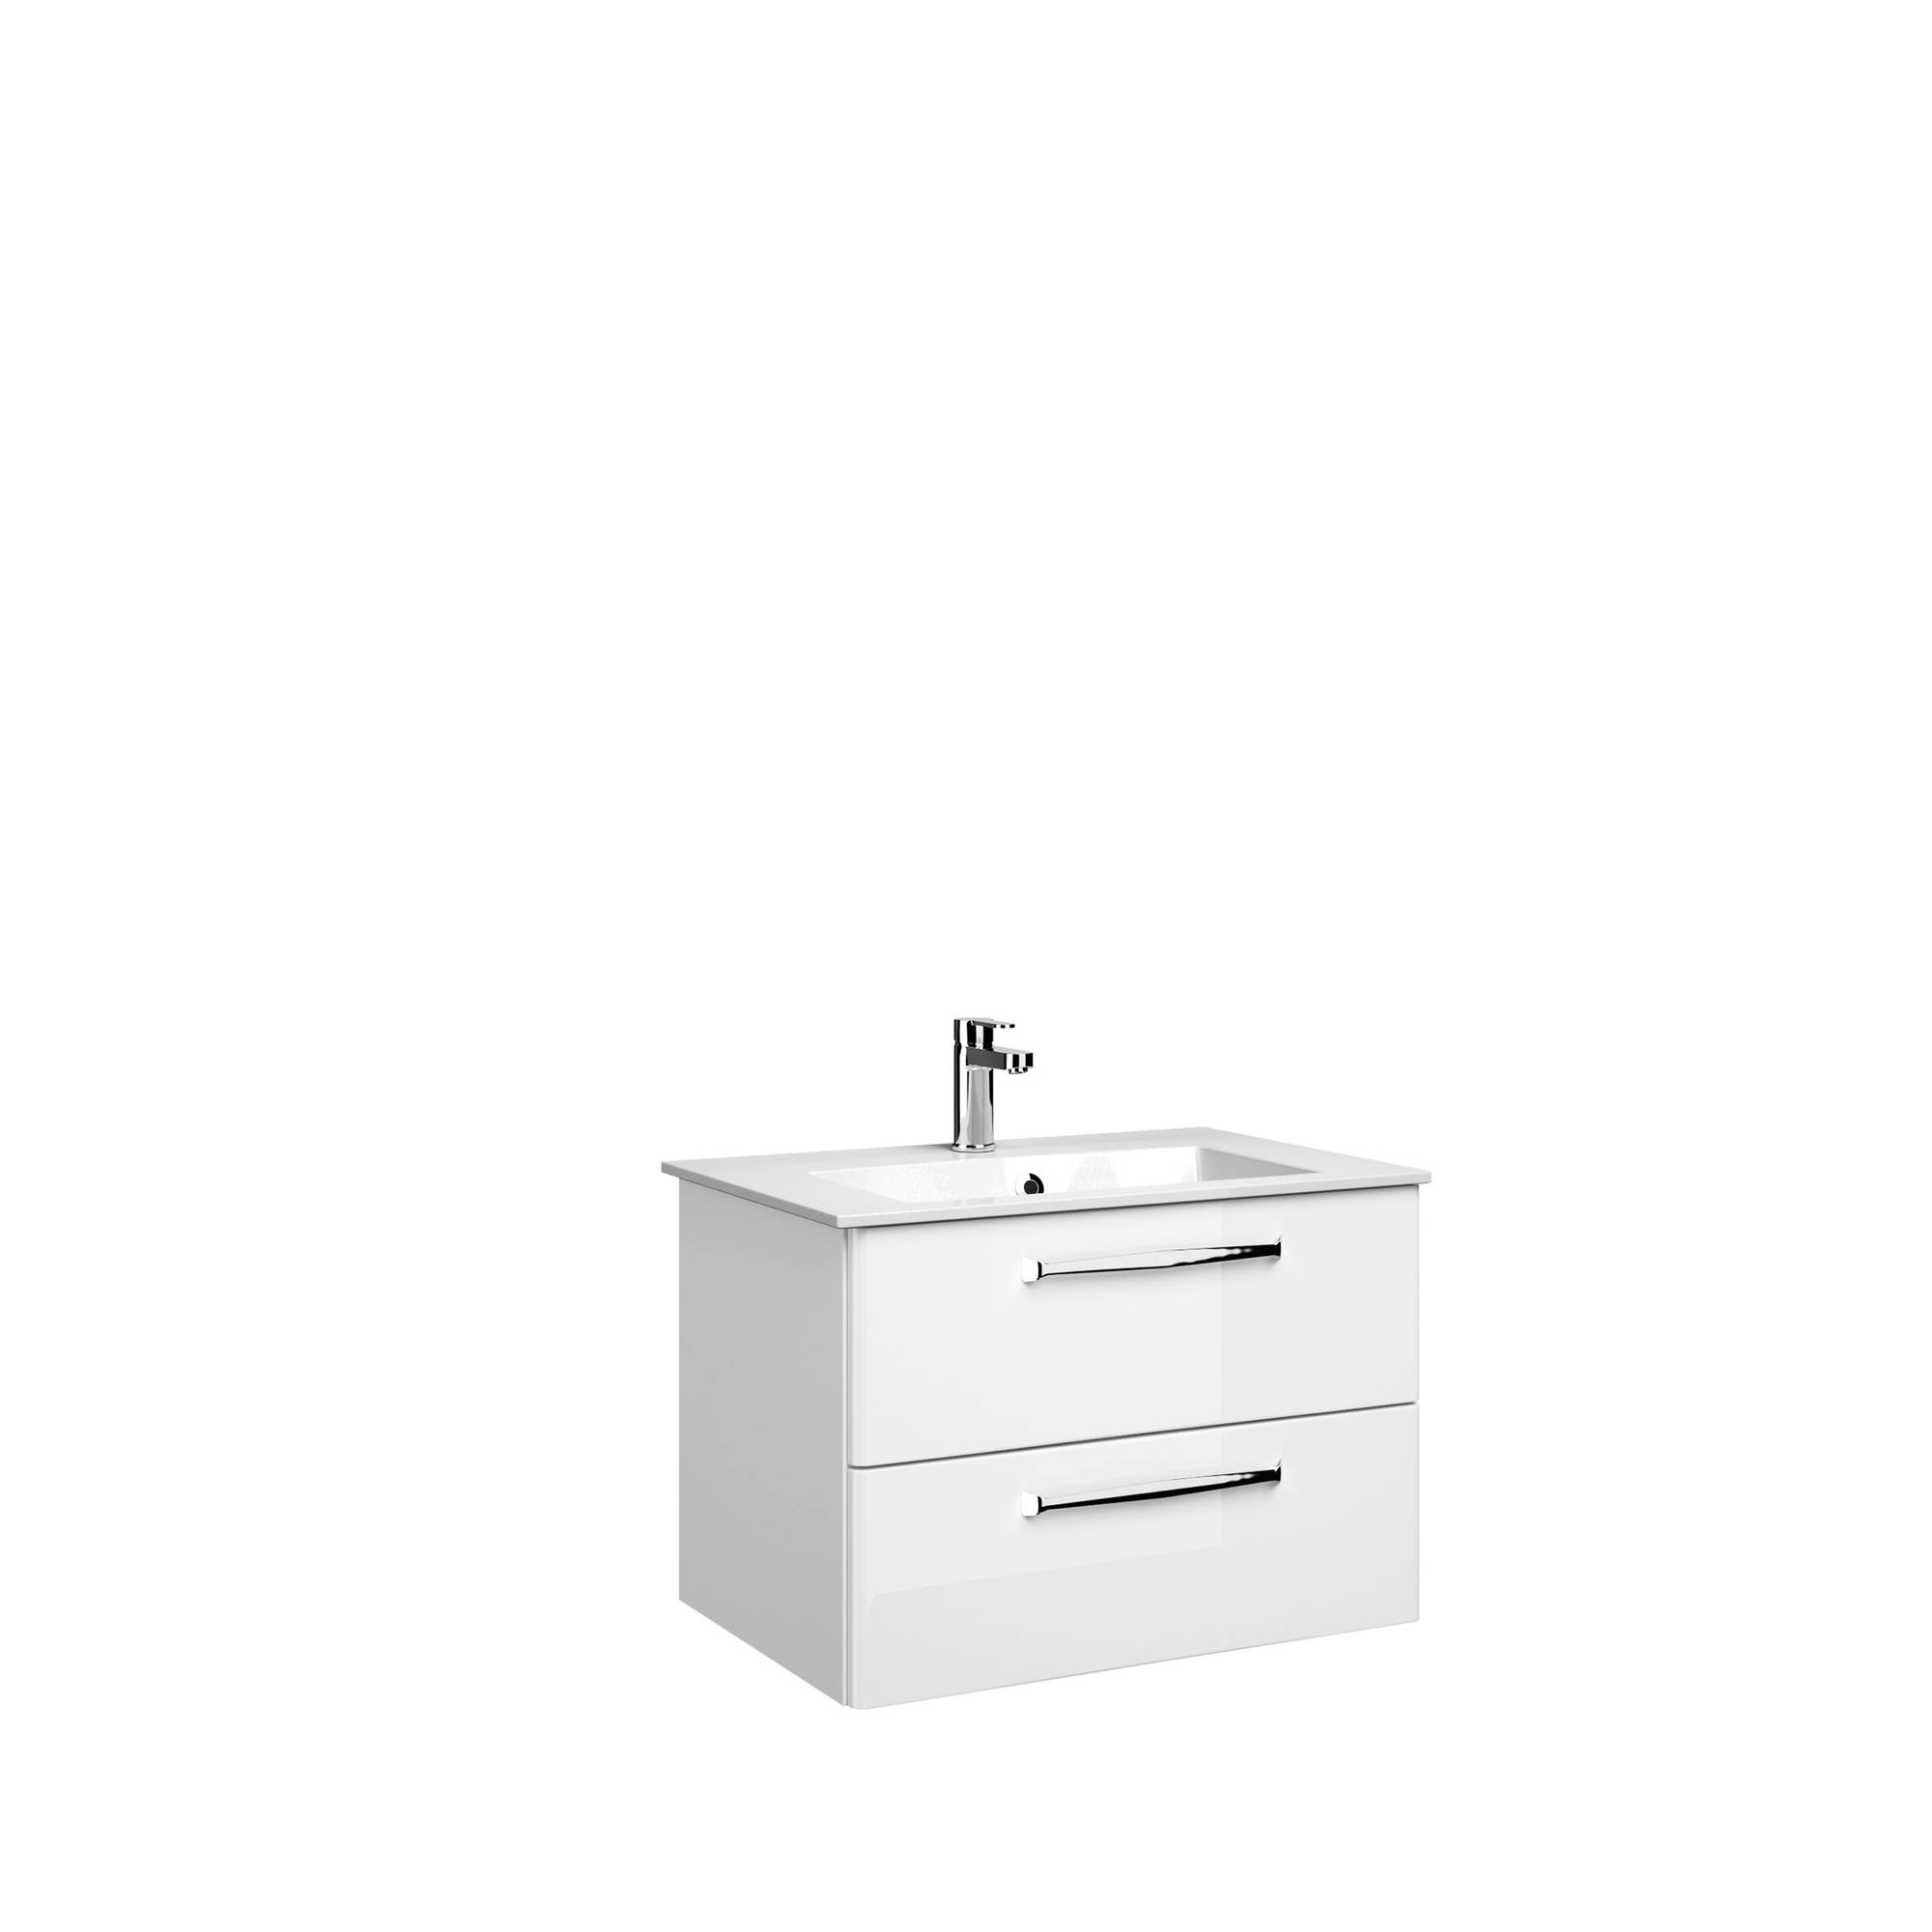 Waschtischunterschrank 'Primo' weiß 75 x 49 x 51 cm + product picture